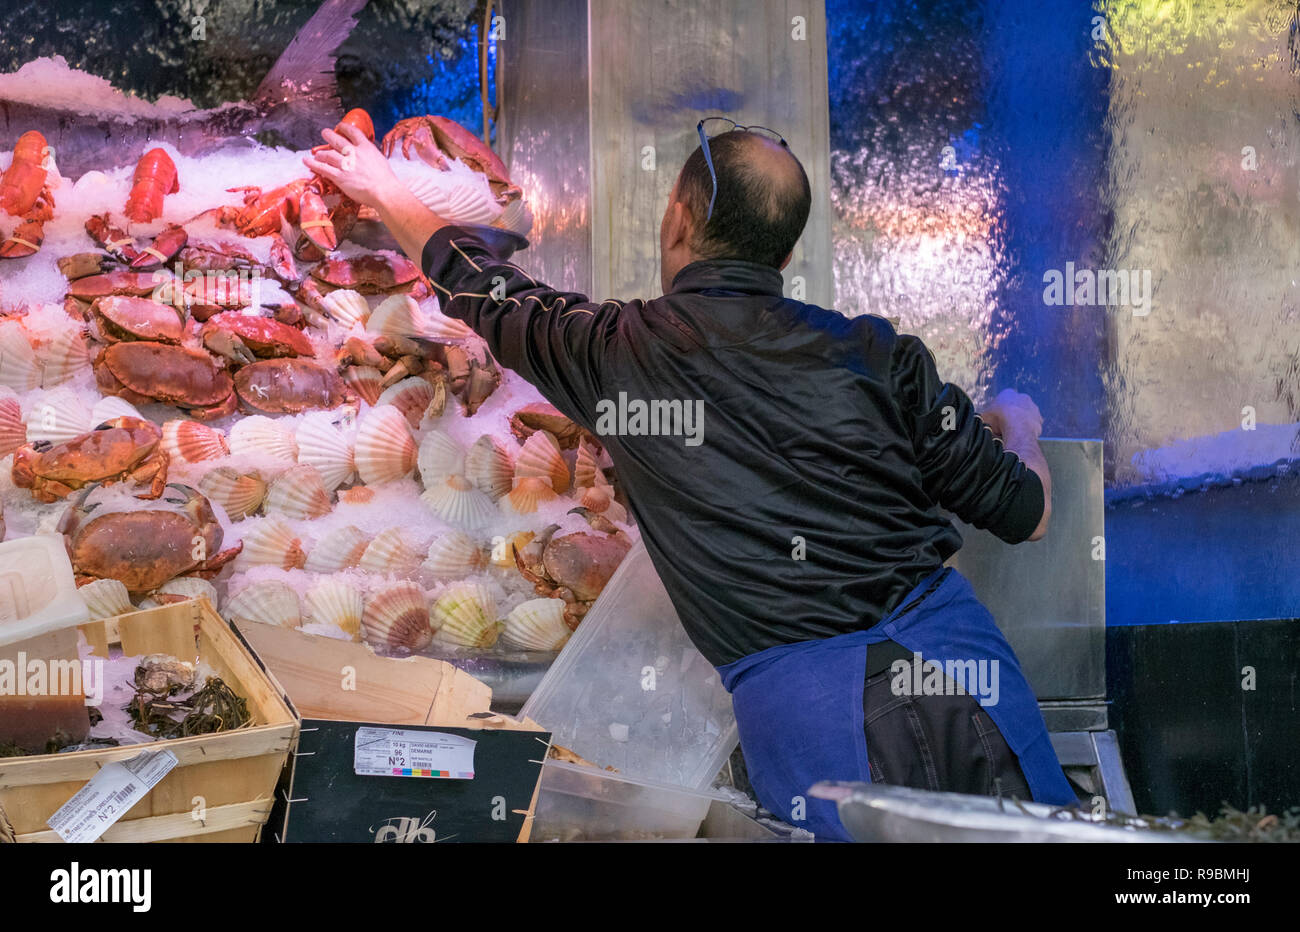 Un pesce monger dispone di un display di crostacei freschi, comprese le aragoste, gamberi e capesante su un letto di ghiaccio per la vendita in un ristorante nelle vicinanze. Foto Stock